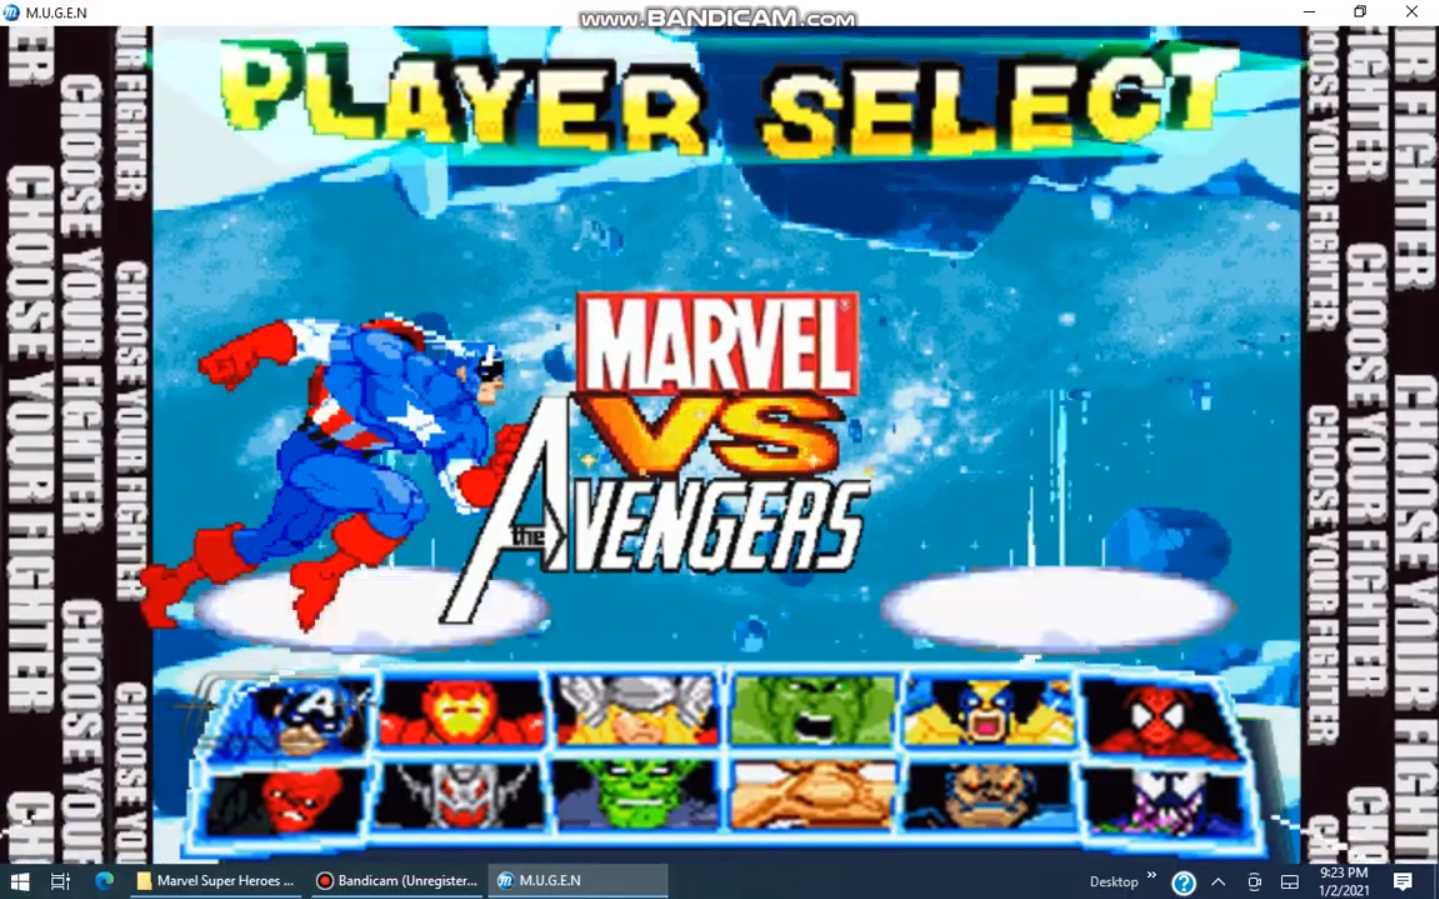 Marvel Super Heroes VS The Avengers